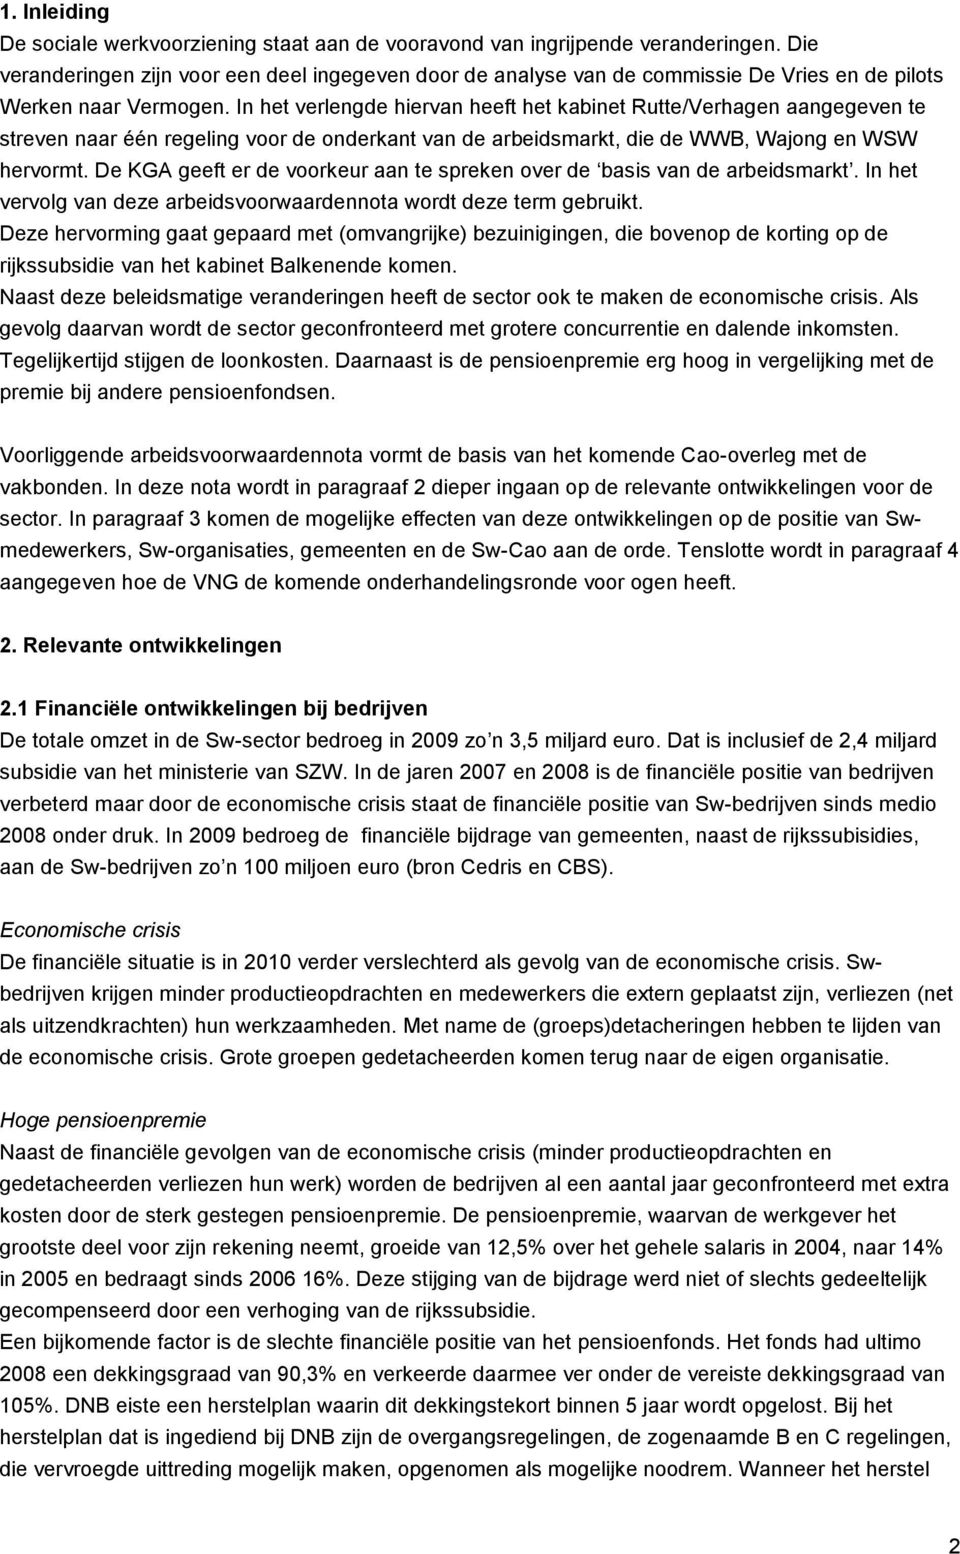 In het verlengde hiervan heeft het kabinet Rutte/Verhagen aangegeven te streven naar één regeling voor de onderkant van de arbeidsmarkt, die de WWB, Wajong en WSW hervormt.